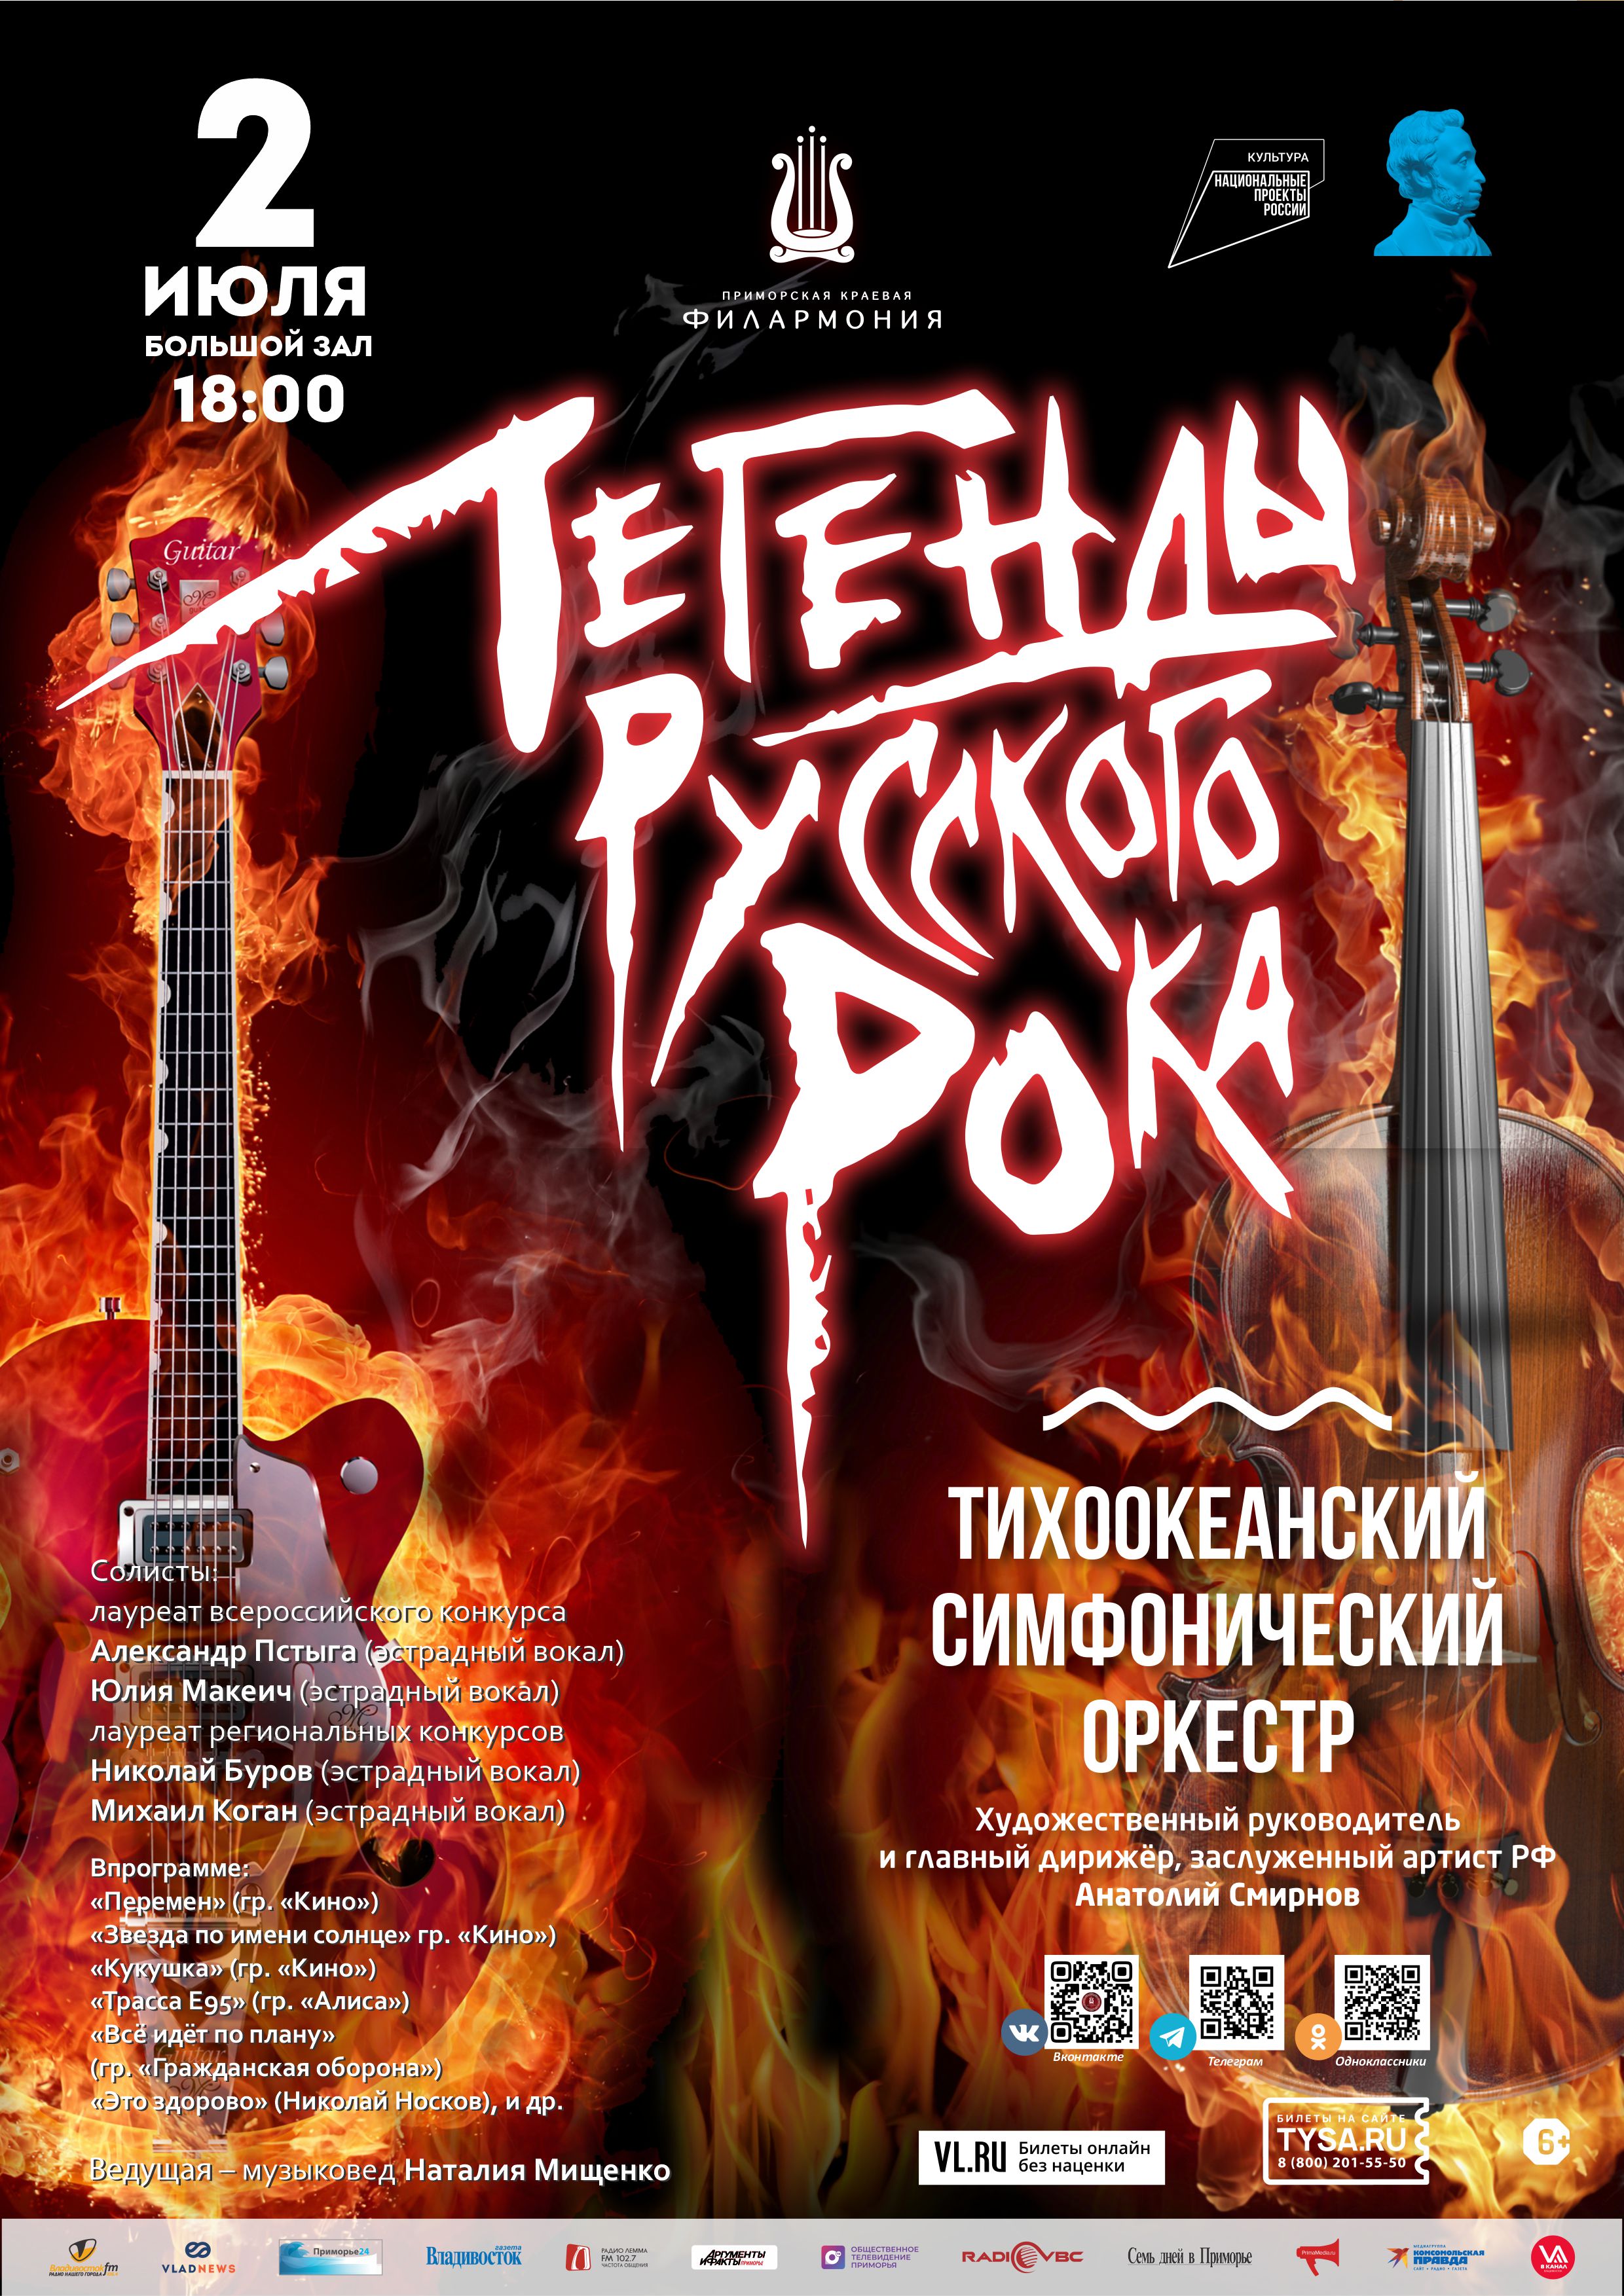 2 июля Концертная программа «Легенды русского рока»